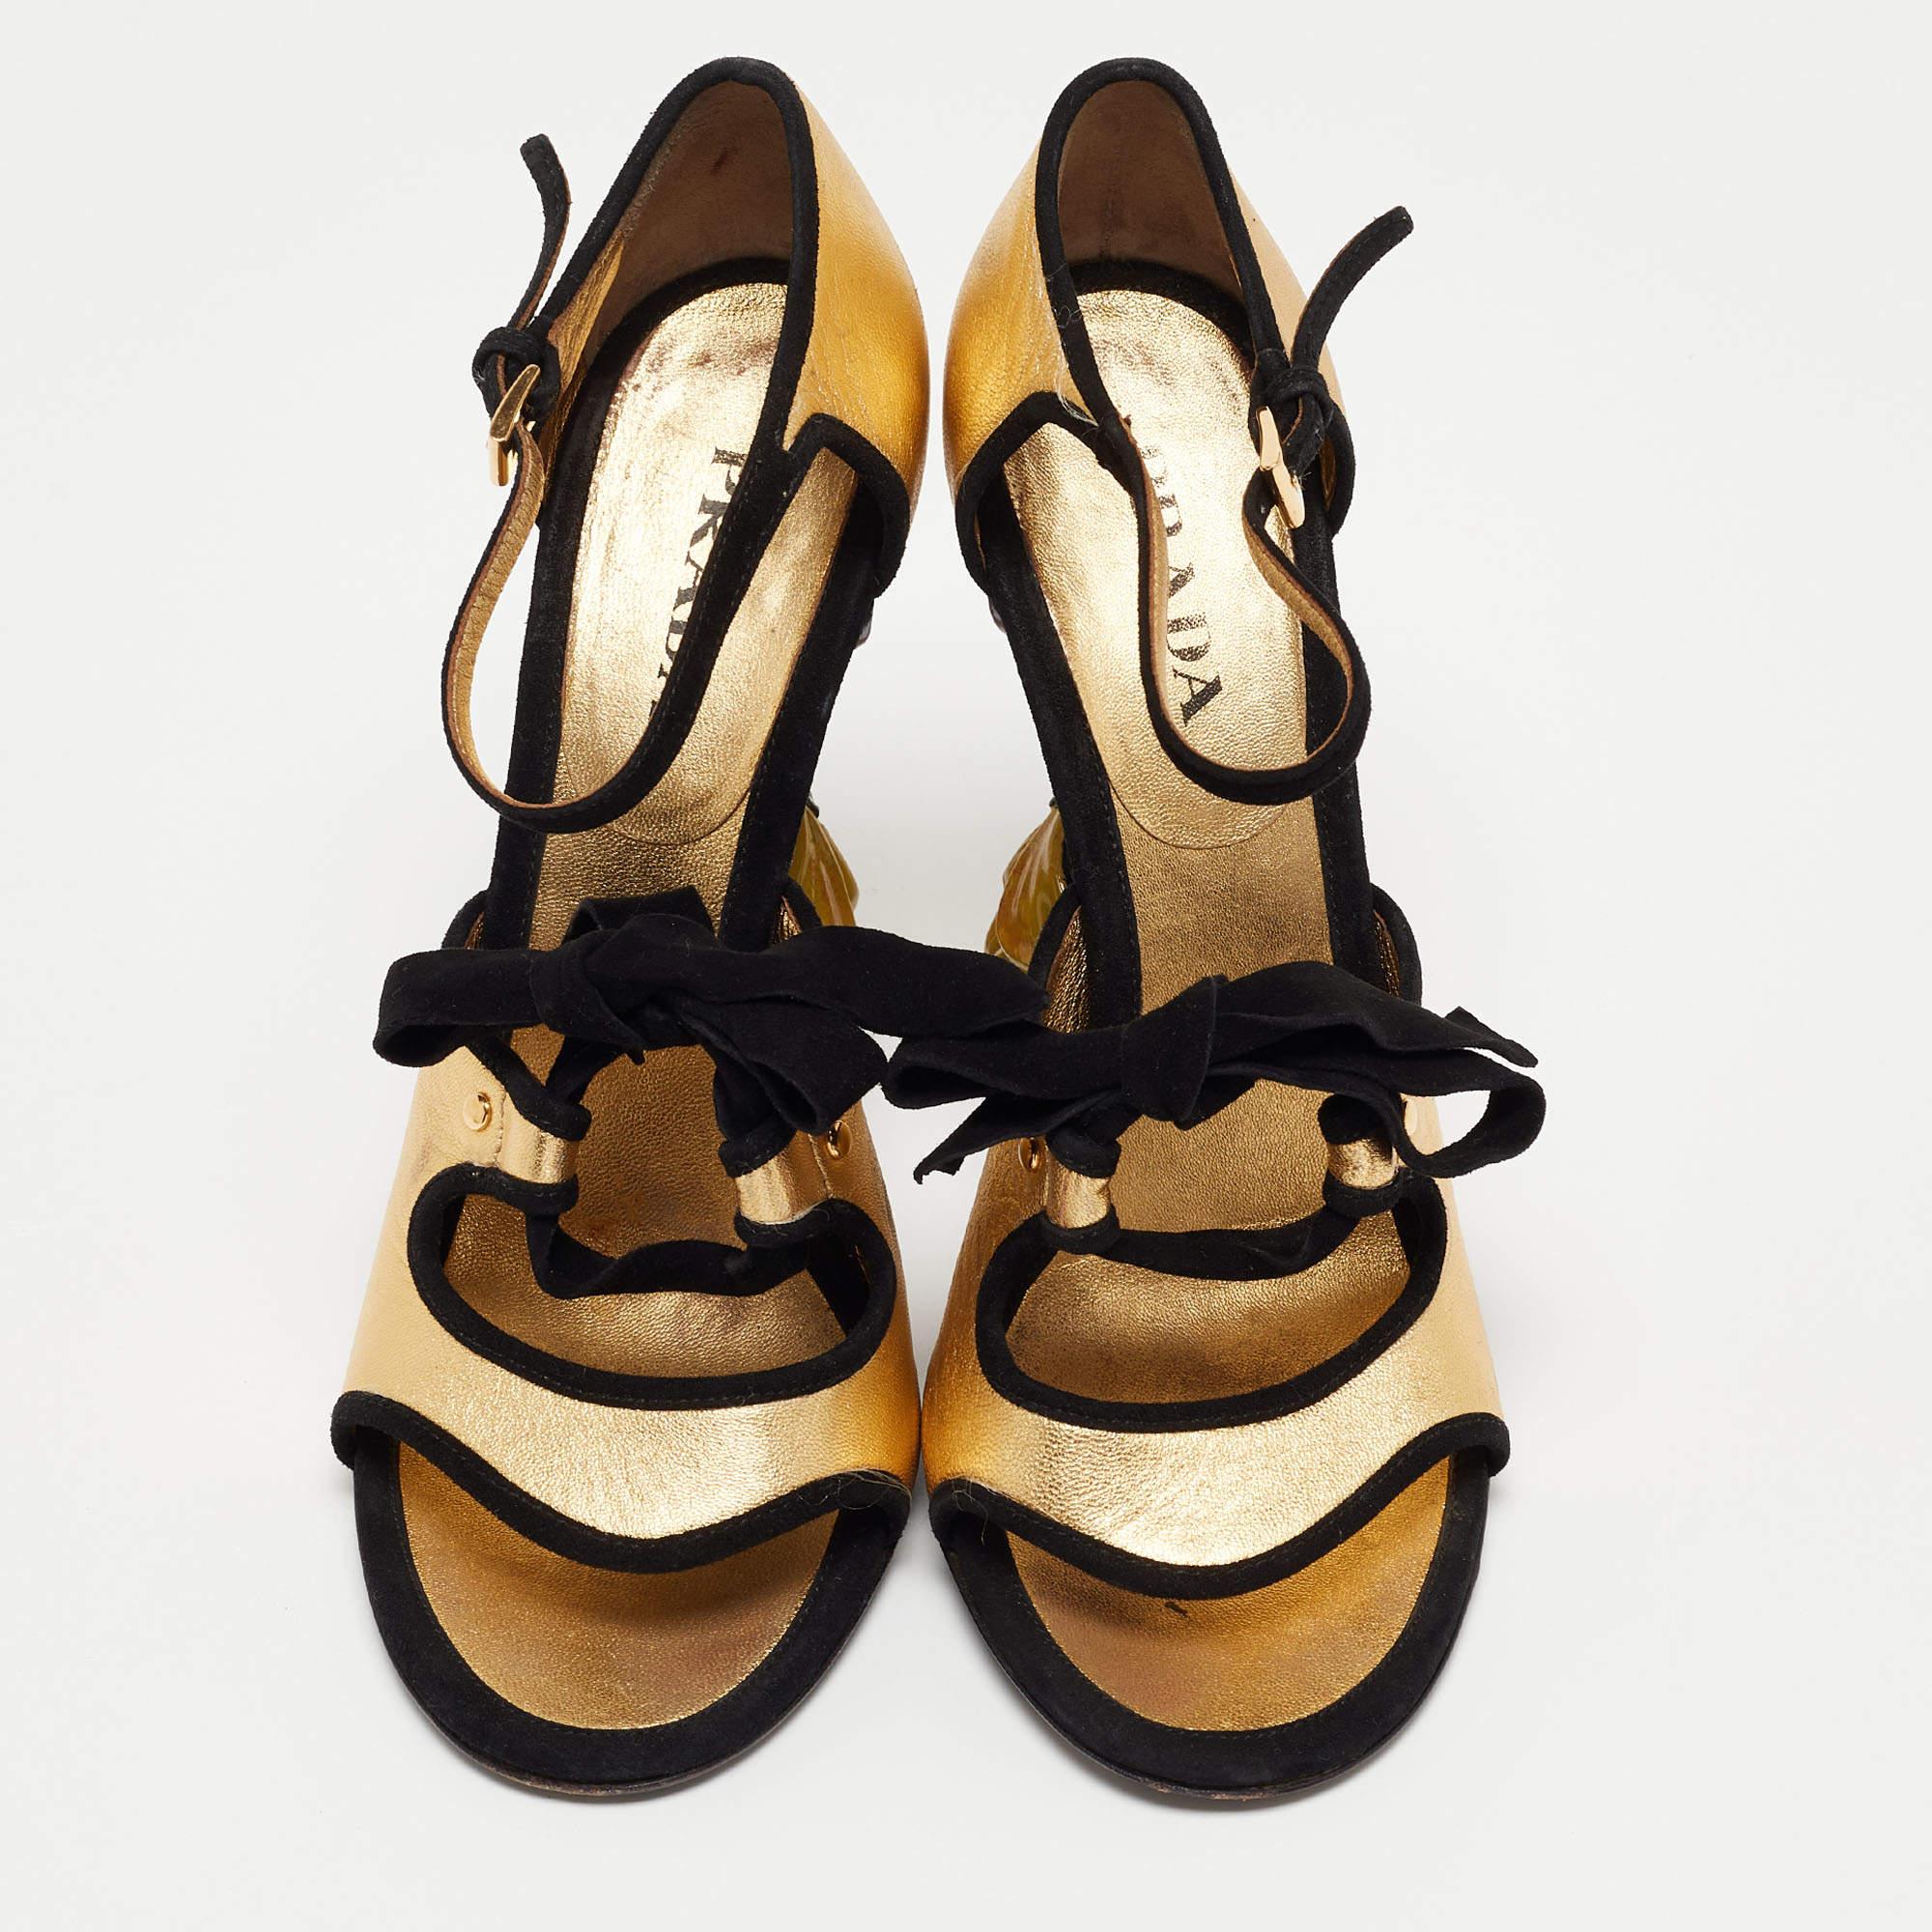 Poursuivant sa démarche de création de chaussures féminines et luxueuses, Prada présente ces beautés en or et en noir. Fabriquées en cuir et en daim, les sanals sont montées sur des talons en forme de fleur.

